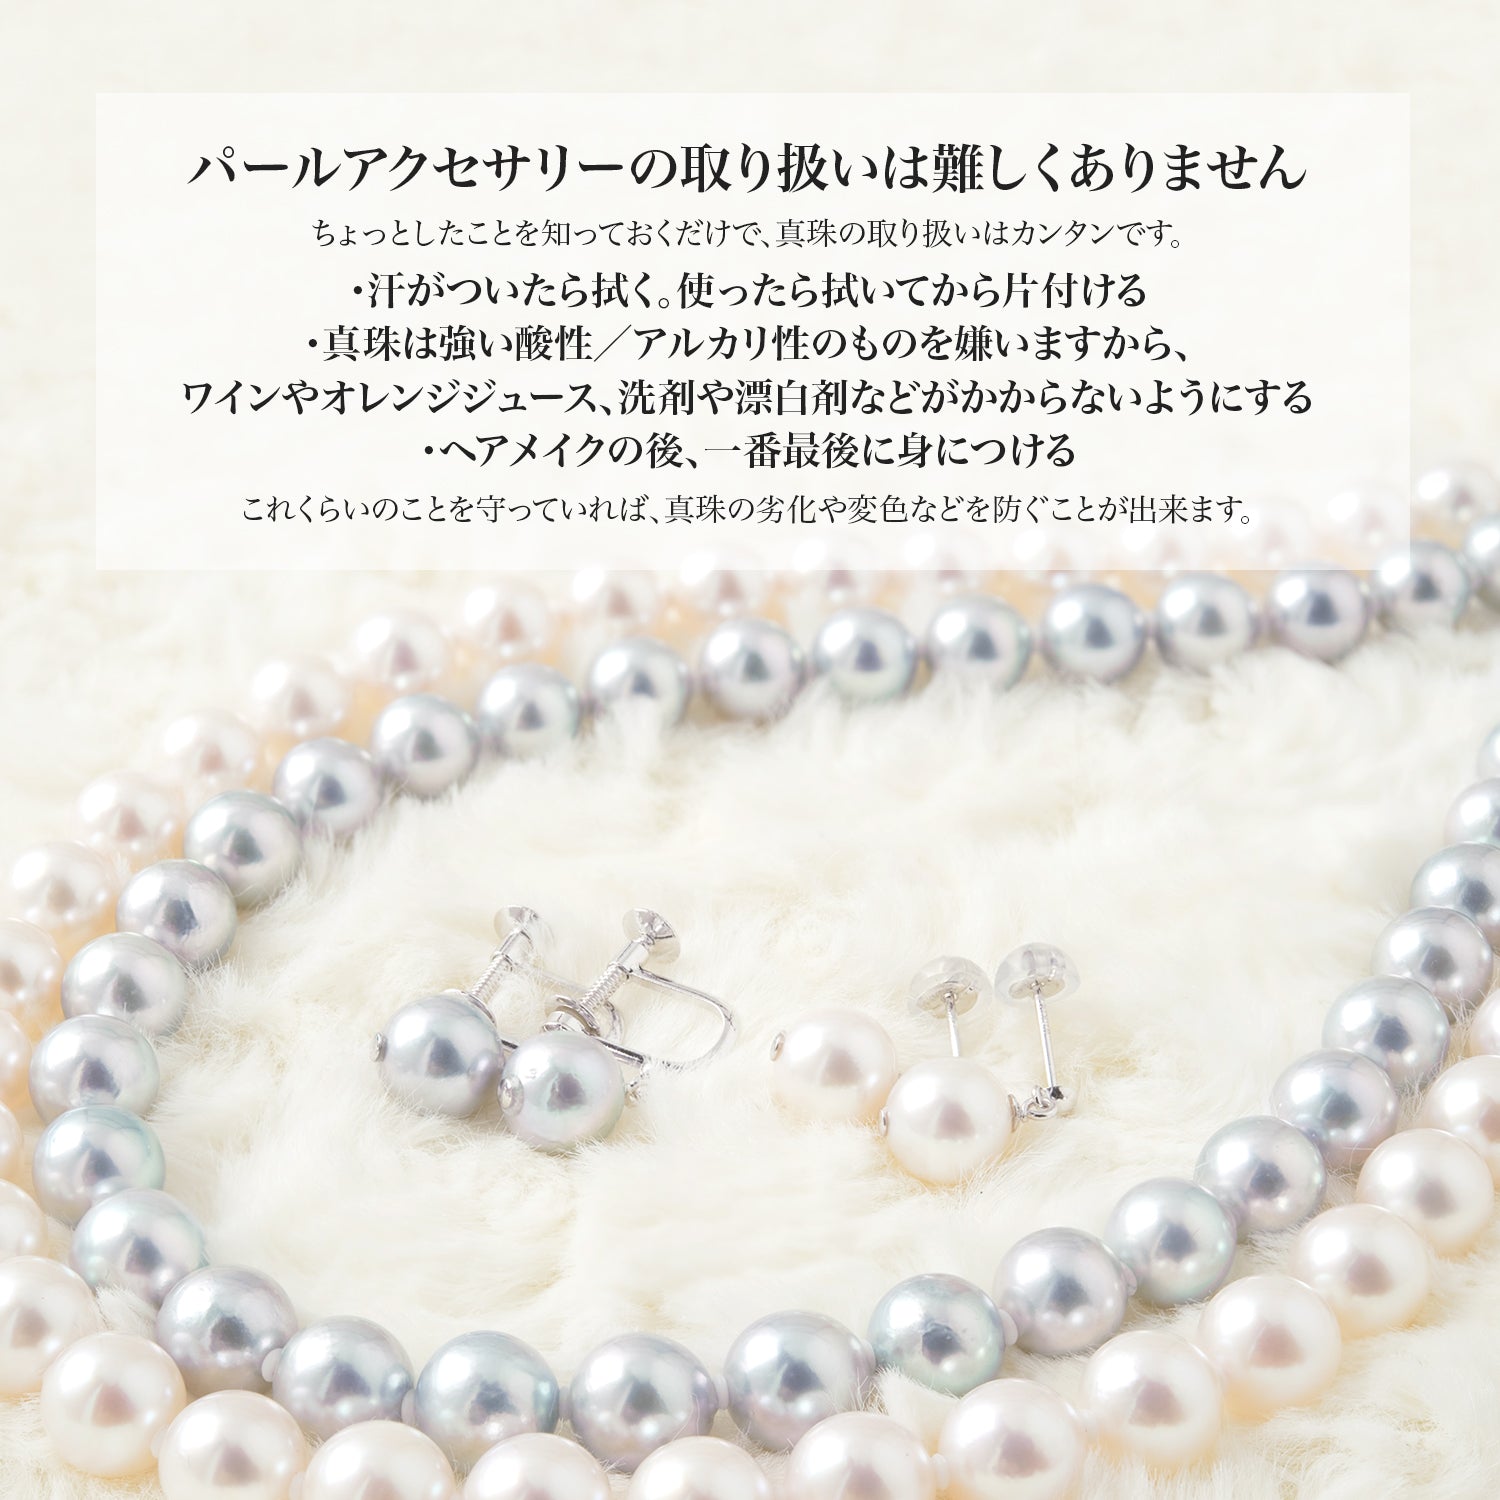 [灰色] Akoya 珍珠项链正装 2 件套 [7.5-8.0mm] (含耳环) 适合正式场合 附有真品证书和收纳盒 [数量有限]